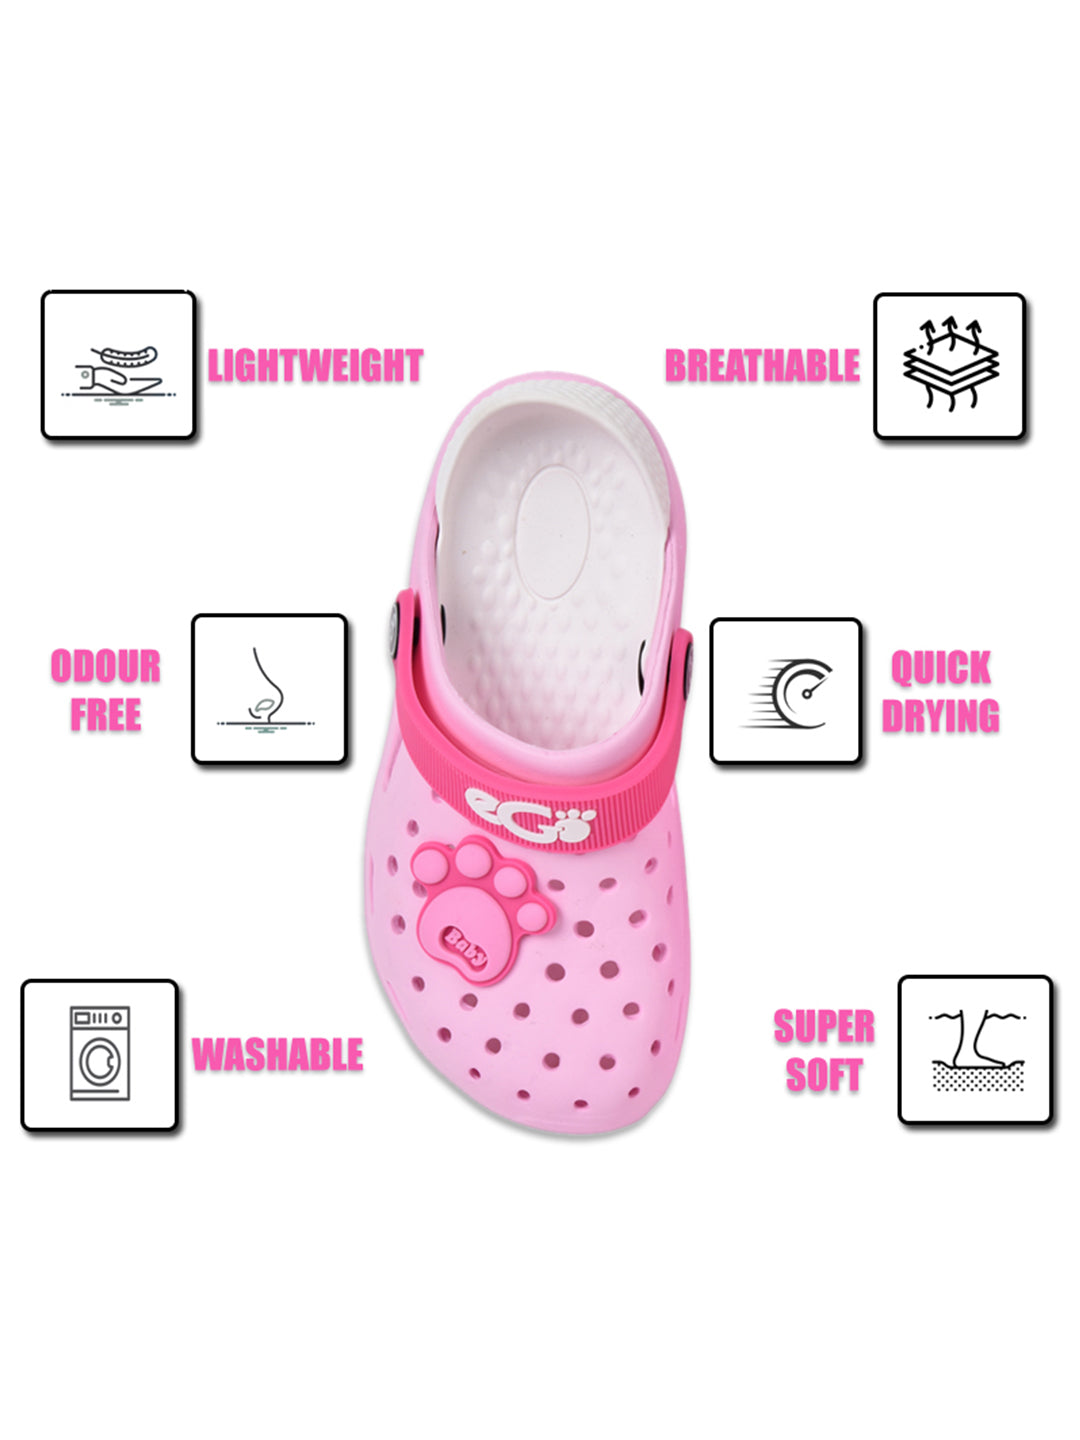 Footwear, Boys Footwear, Girls Footwear, Light Pink Clogs